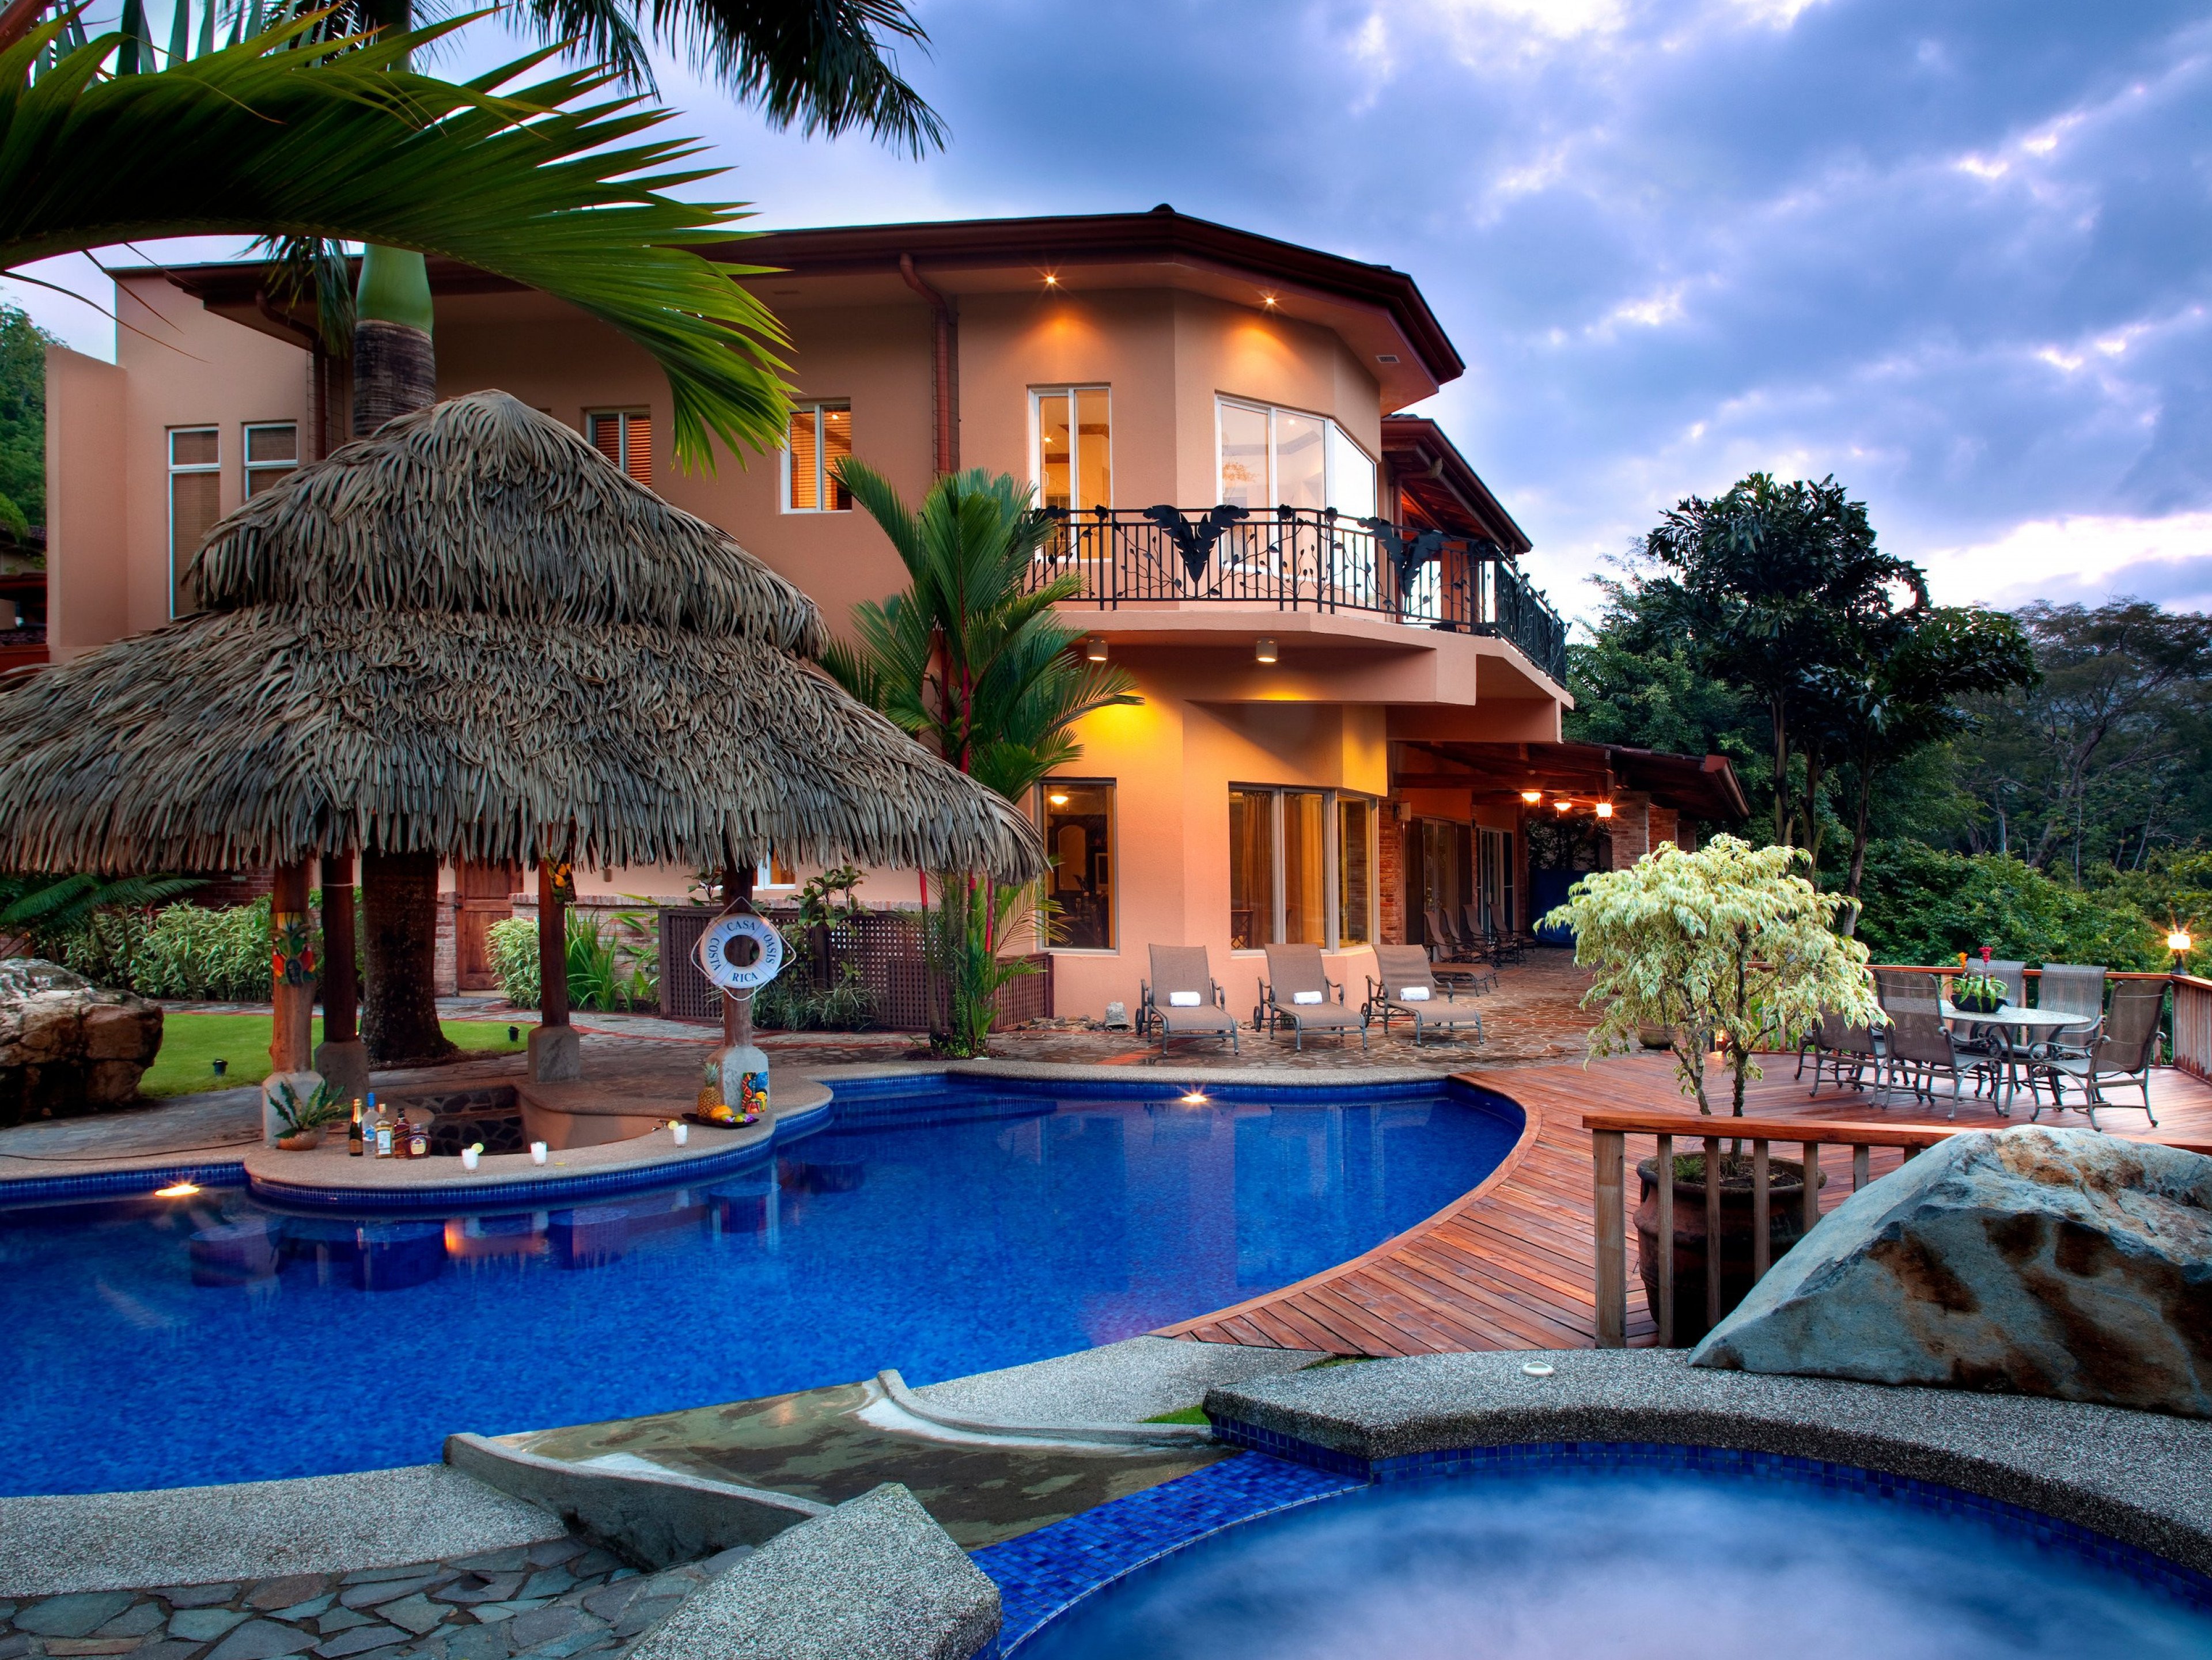 Costa Rica 55 Costa Rica vacation rentals near Envision Festival